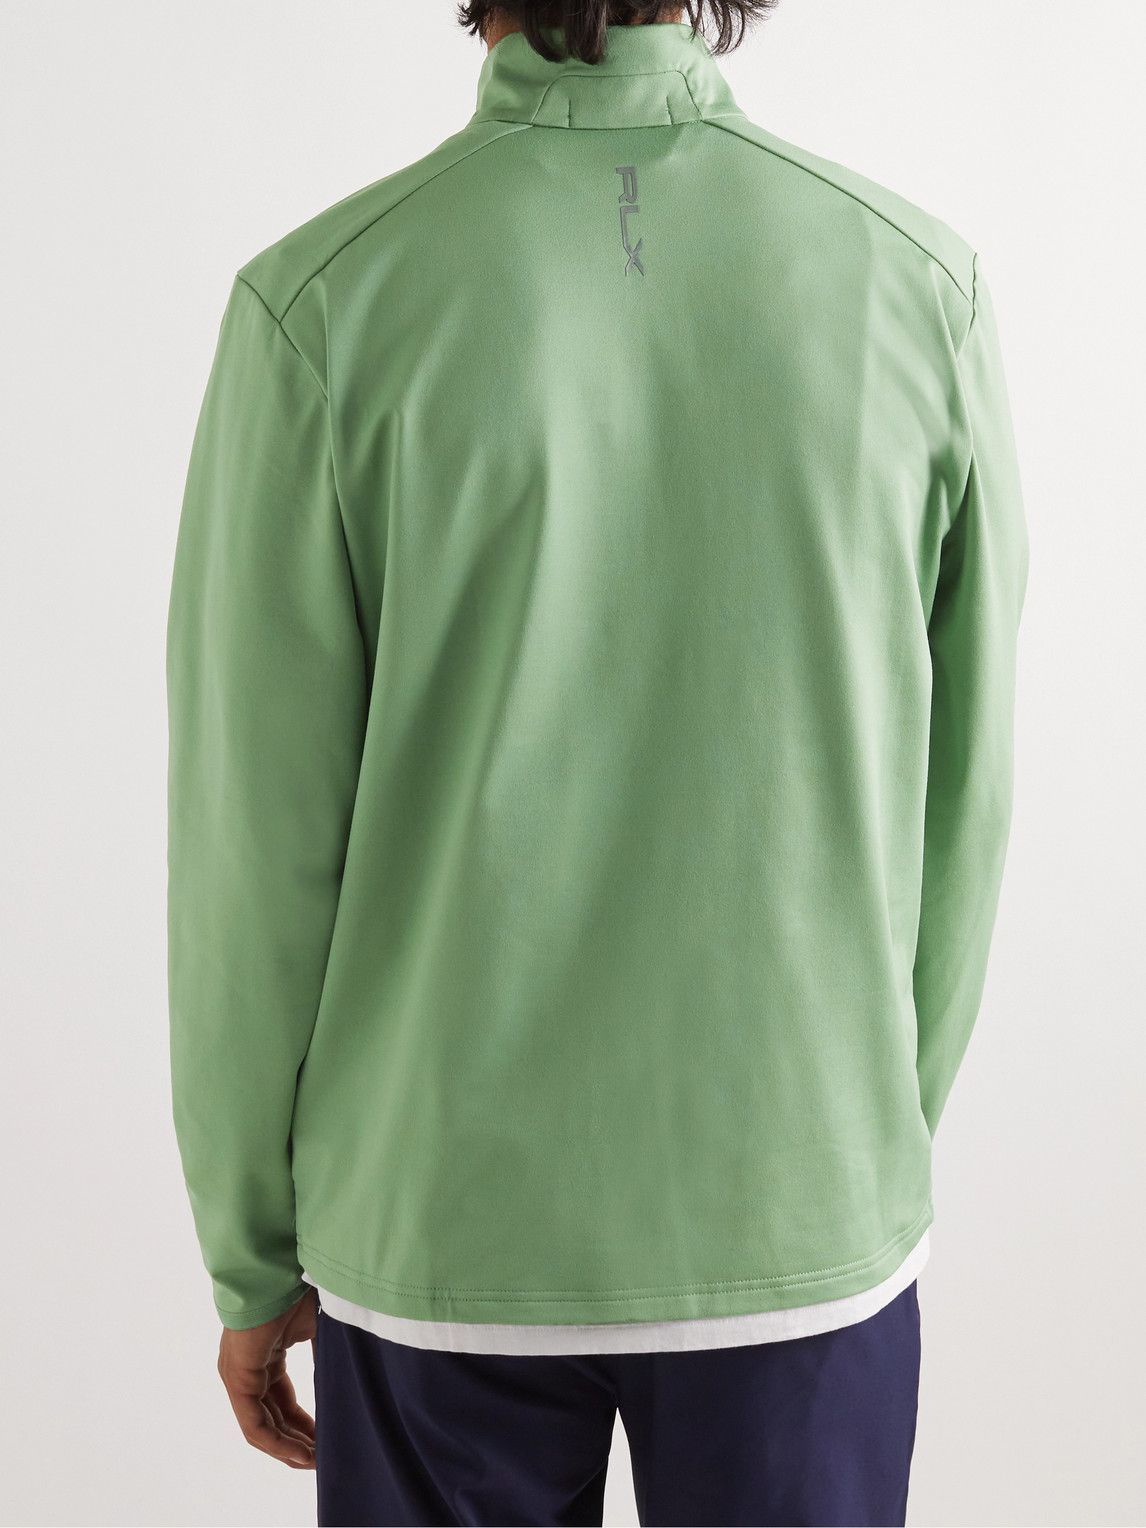 RLX Ralph Lauren - Logo-Print Recycled Tech-Jersey Half-Zip Golf Top -  Green RLX Ralph Lauren